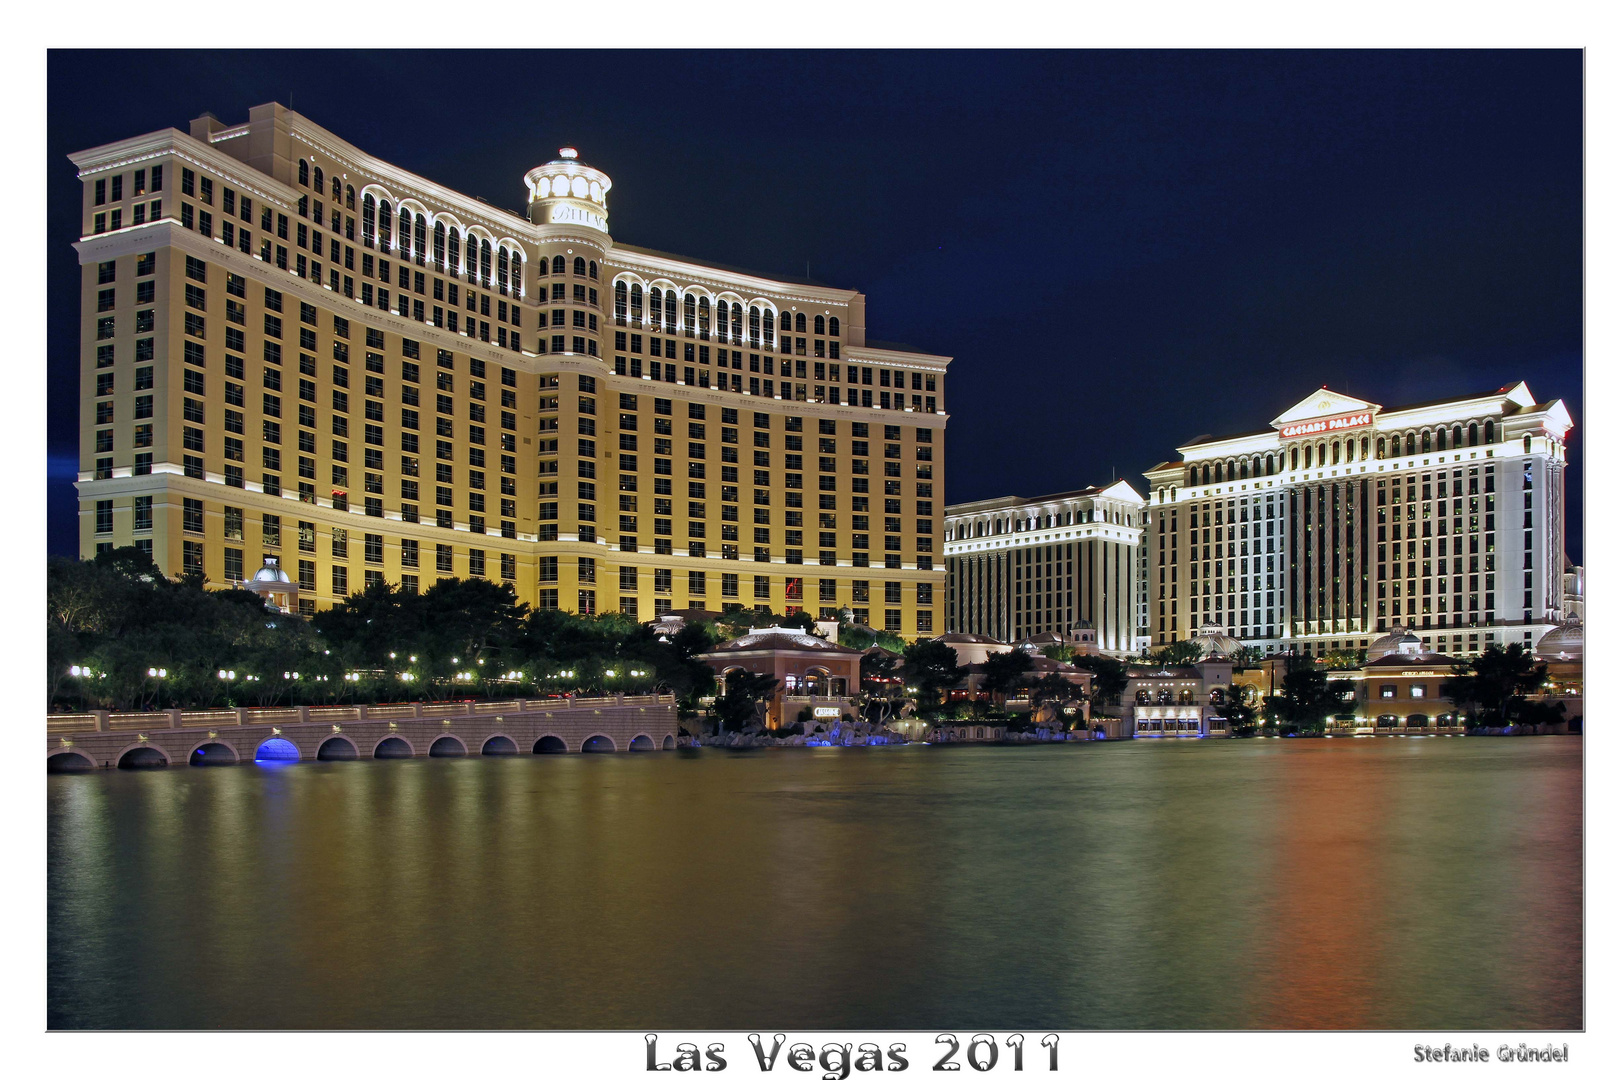 Las Vegas by Nigth